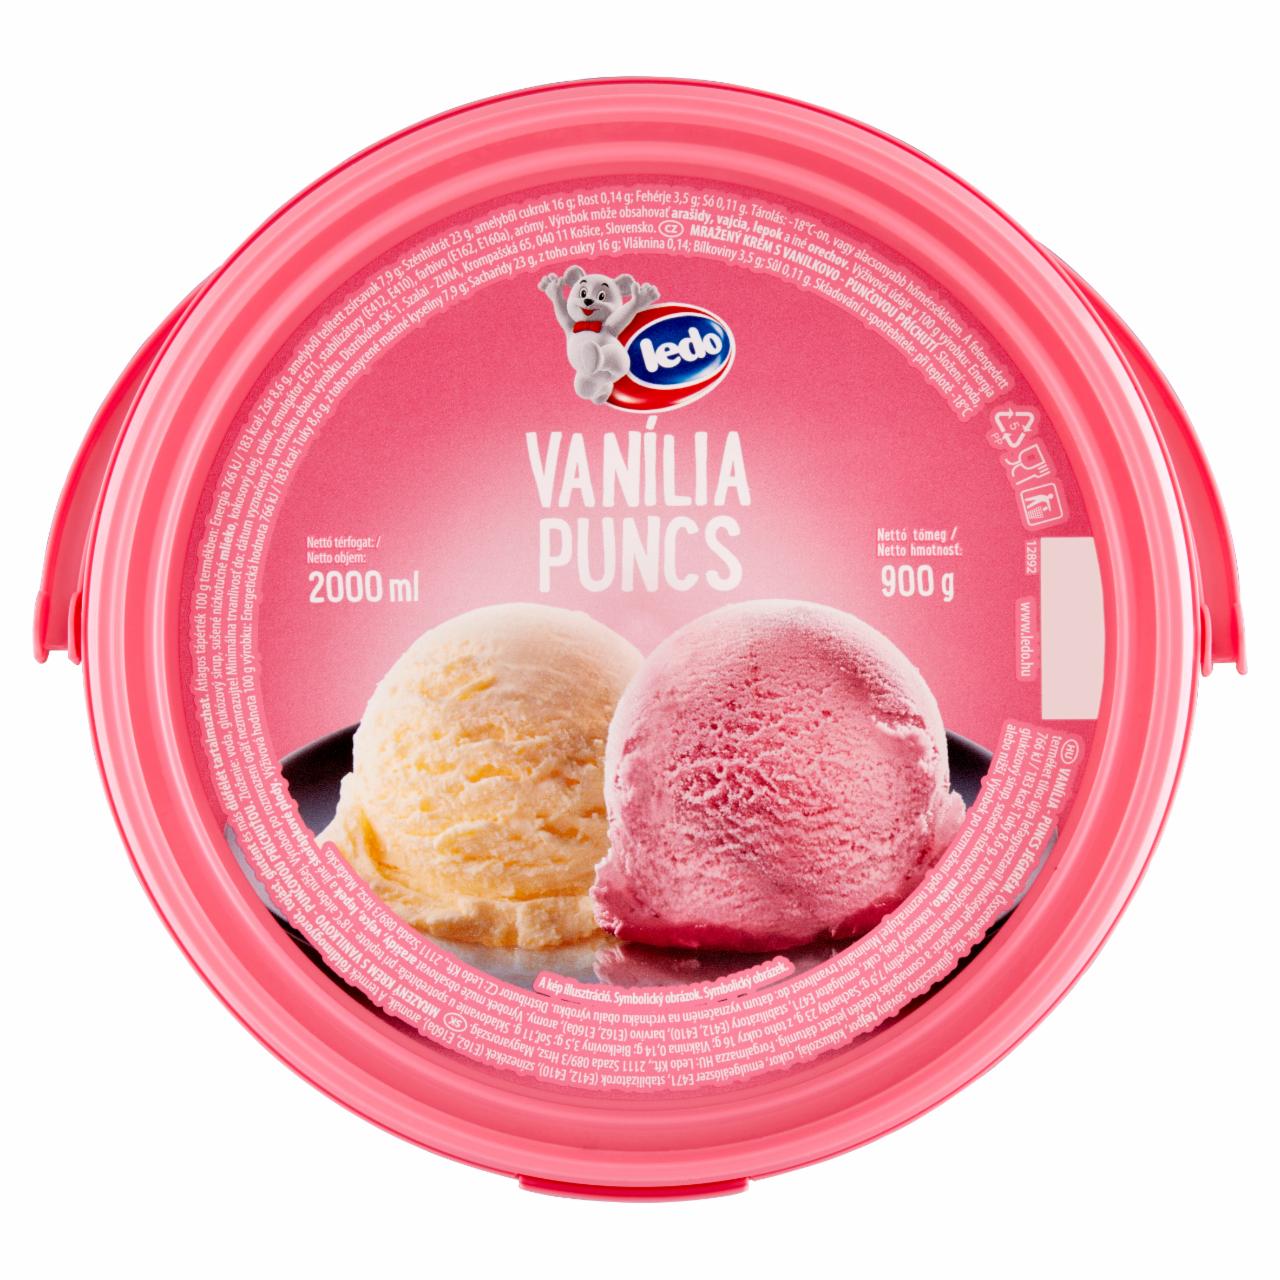 Képek - Ledo vanília-puncs jégkrém 2000 ml